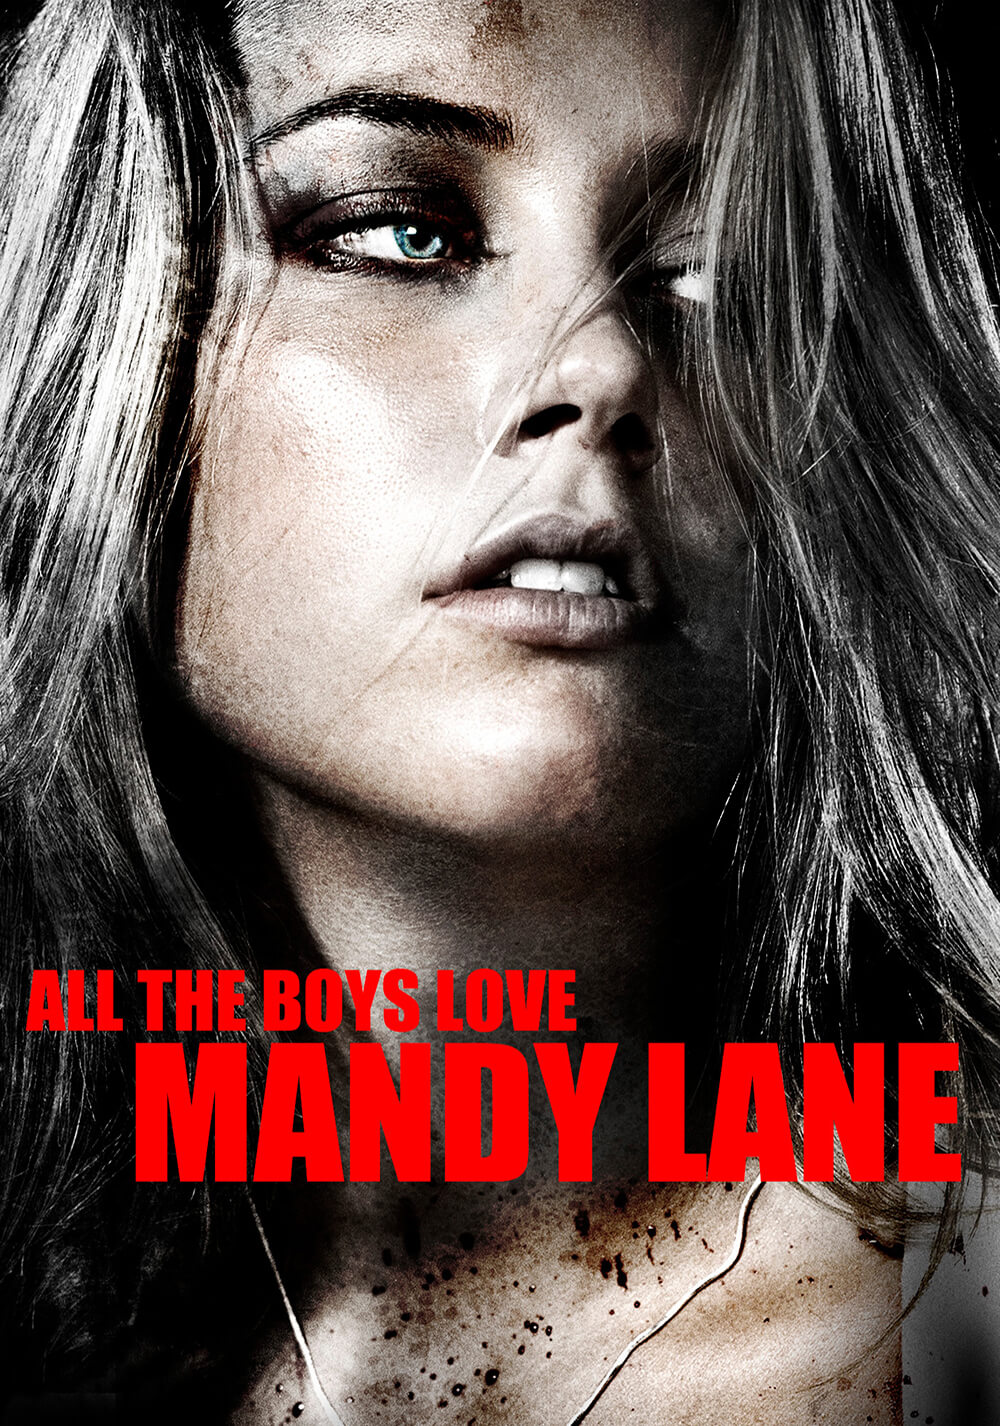 همهٔ پسرها مندی لین را دوست دارند (All the Boys Love Mandy Lane)